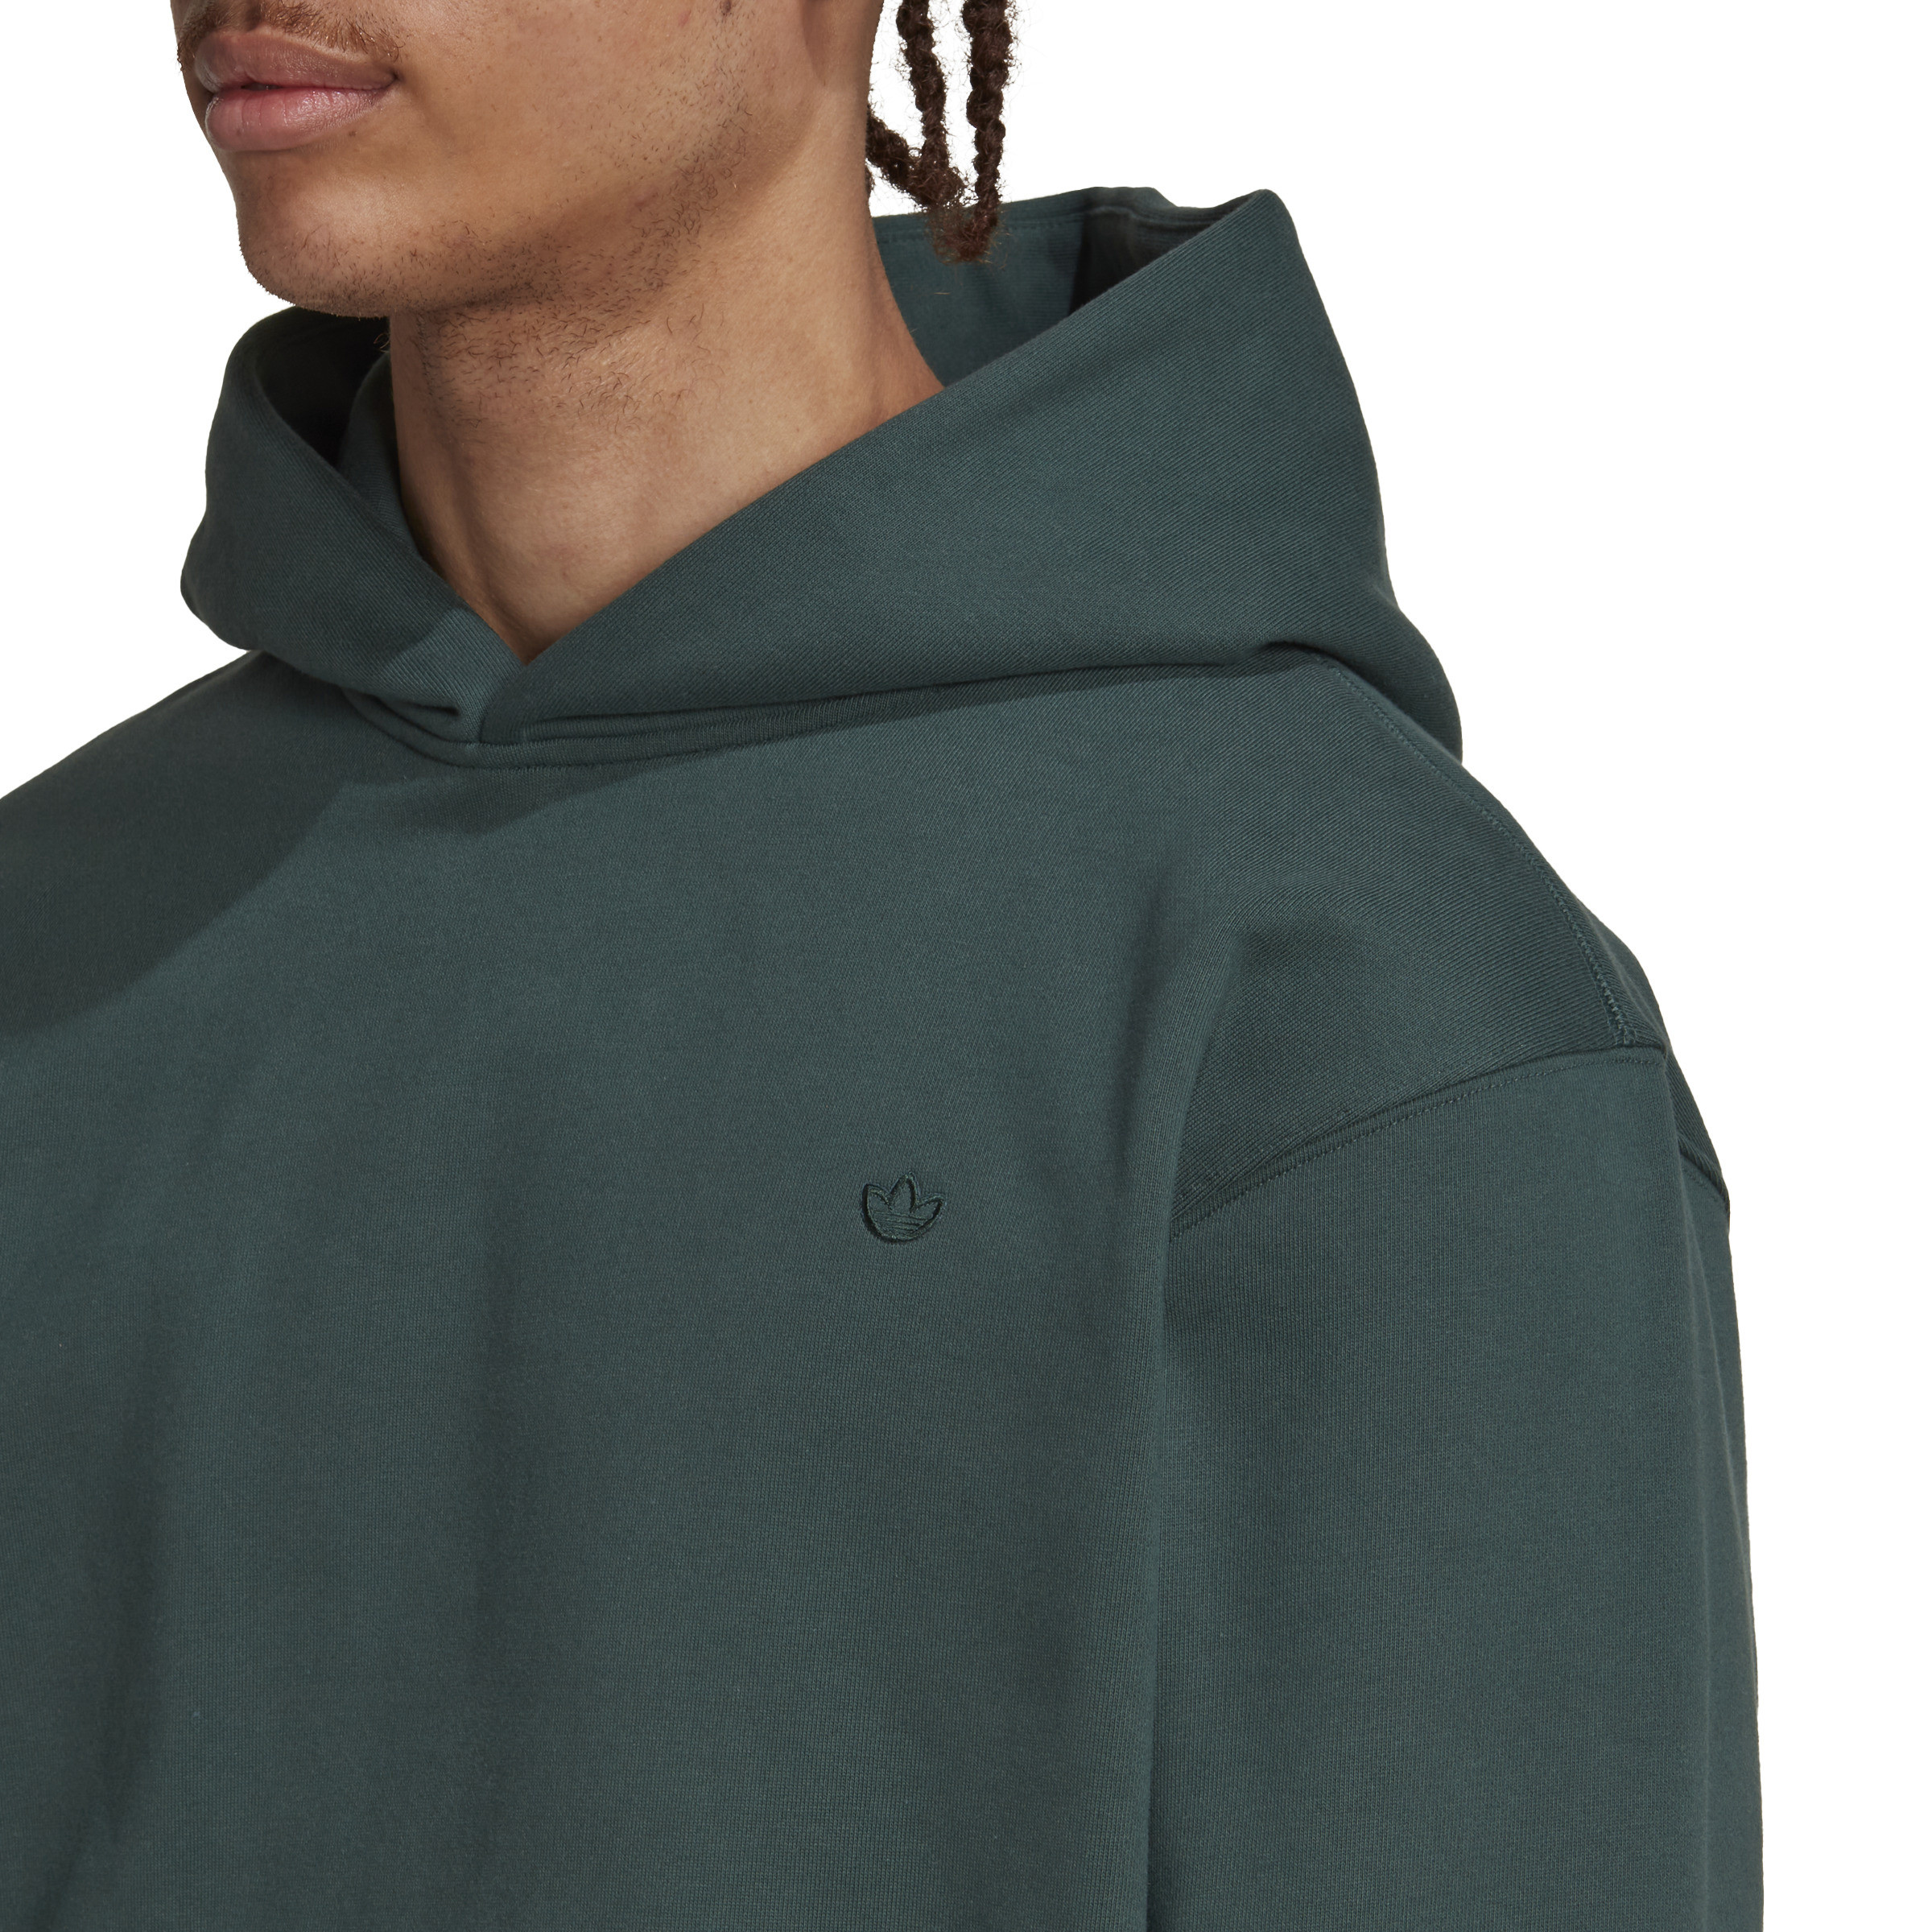 Adidas - Hooded sweatshirt adicolor, Dark Green, large image number 2